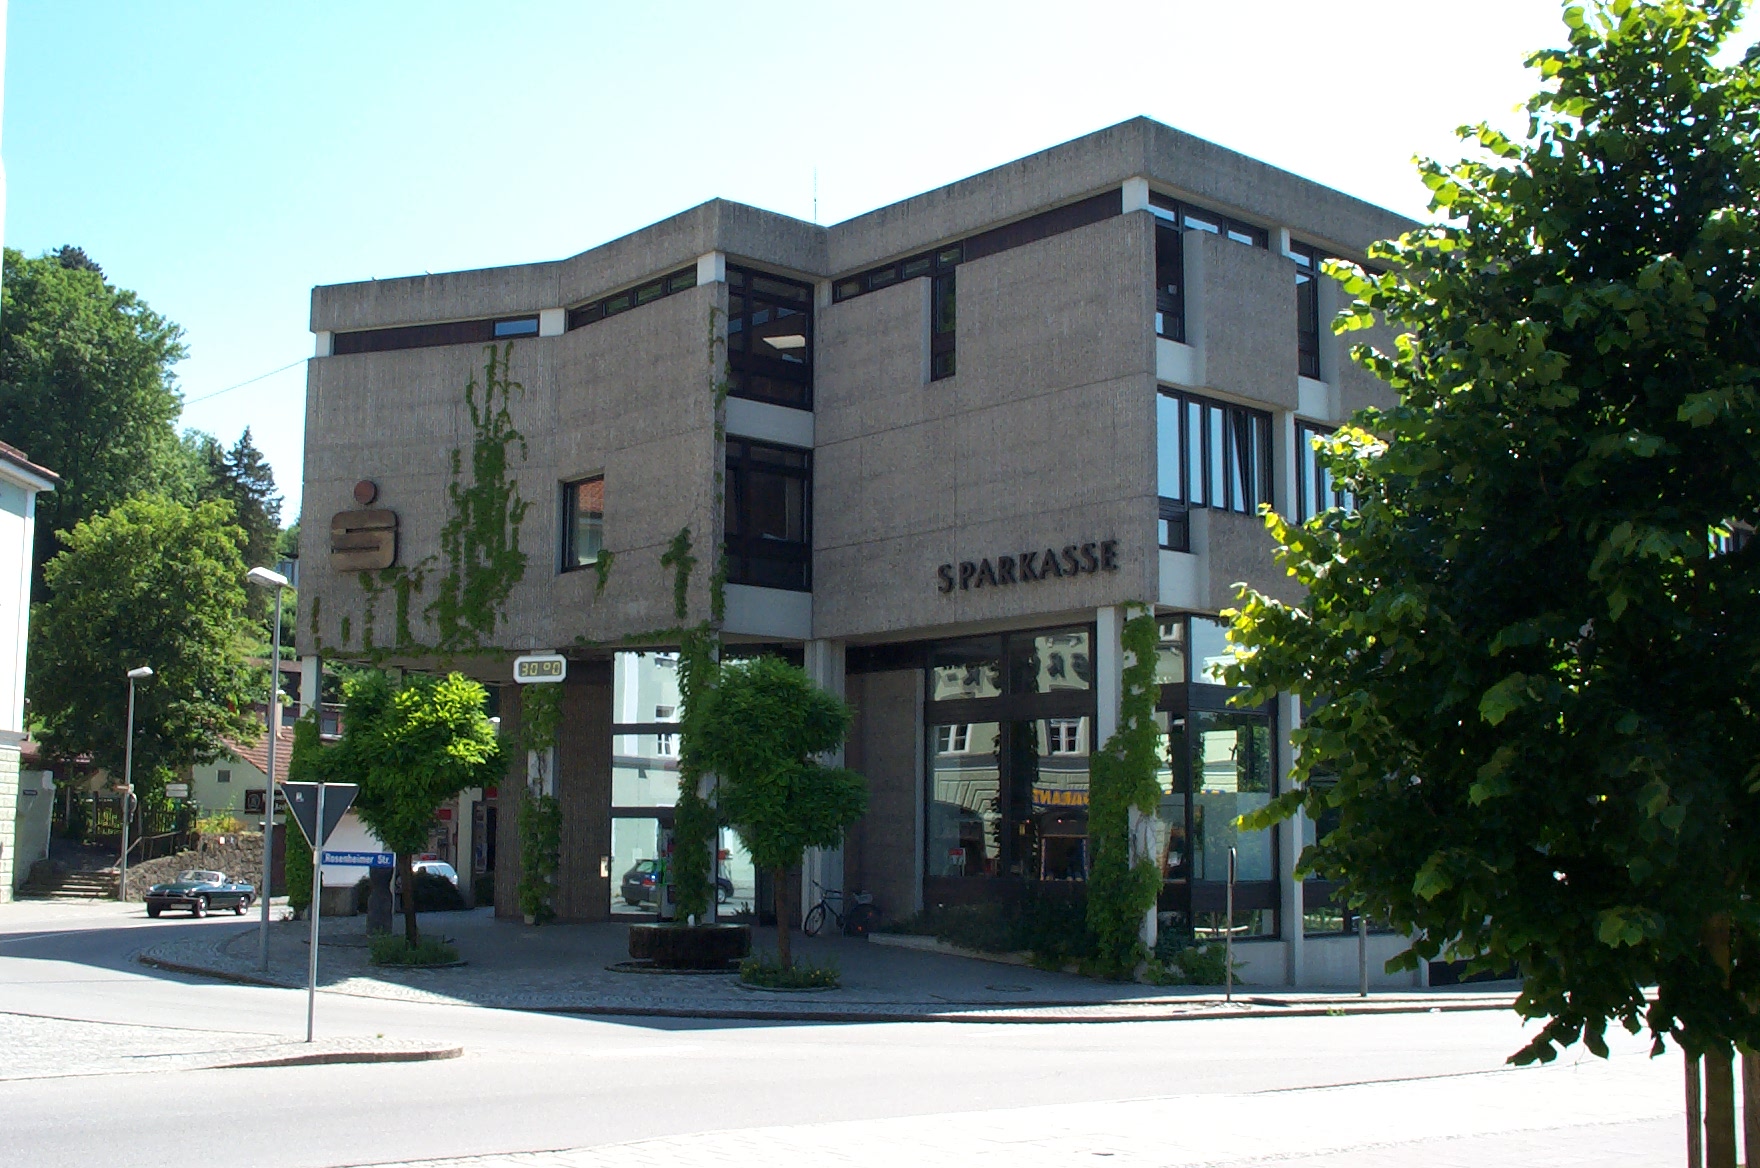 Sparkasse Beratungszentrum Wasserburg a. Inn